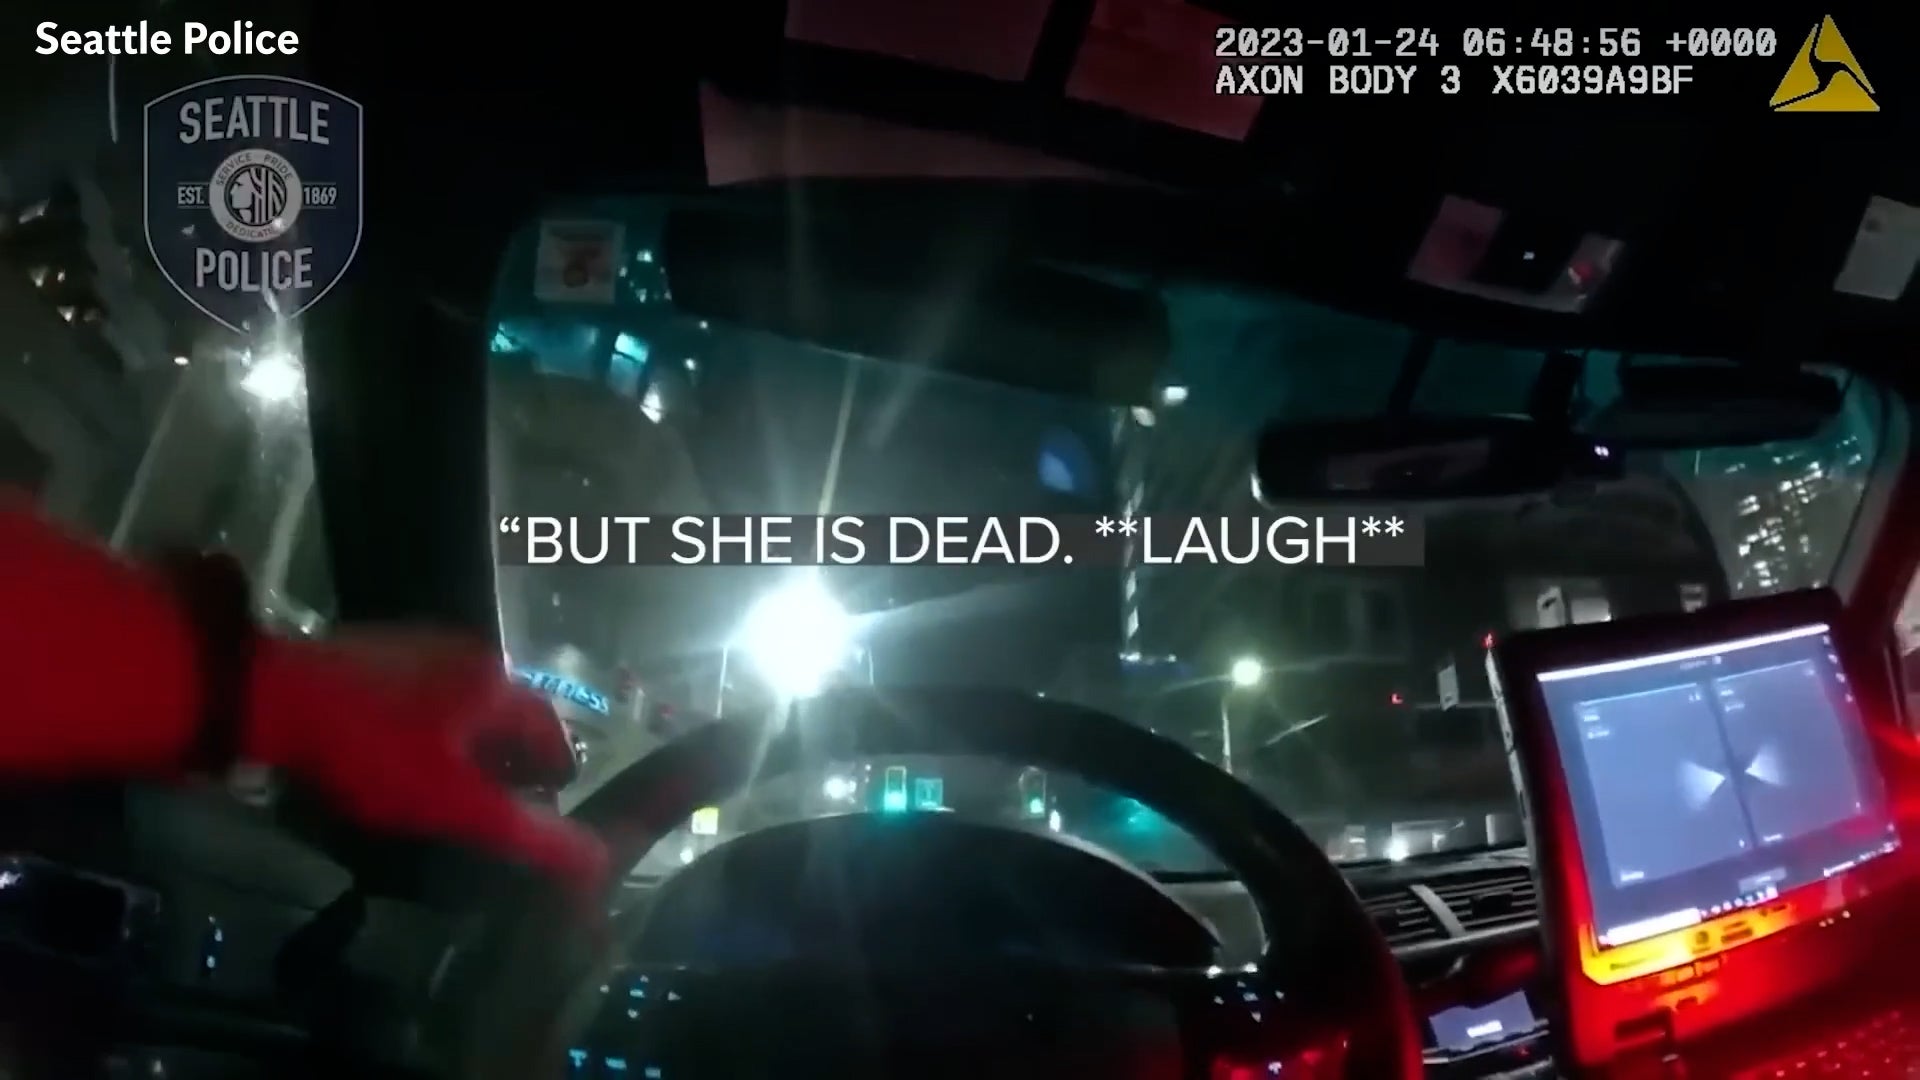 Impactantes imágenes de la cámara corporal muestran al agente de policía riéndose sobre una mujer que murió tras ser atropellada por una patrulla en Seattle